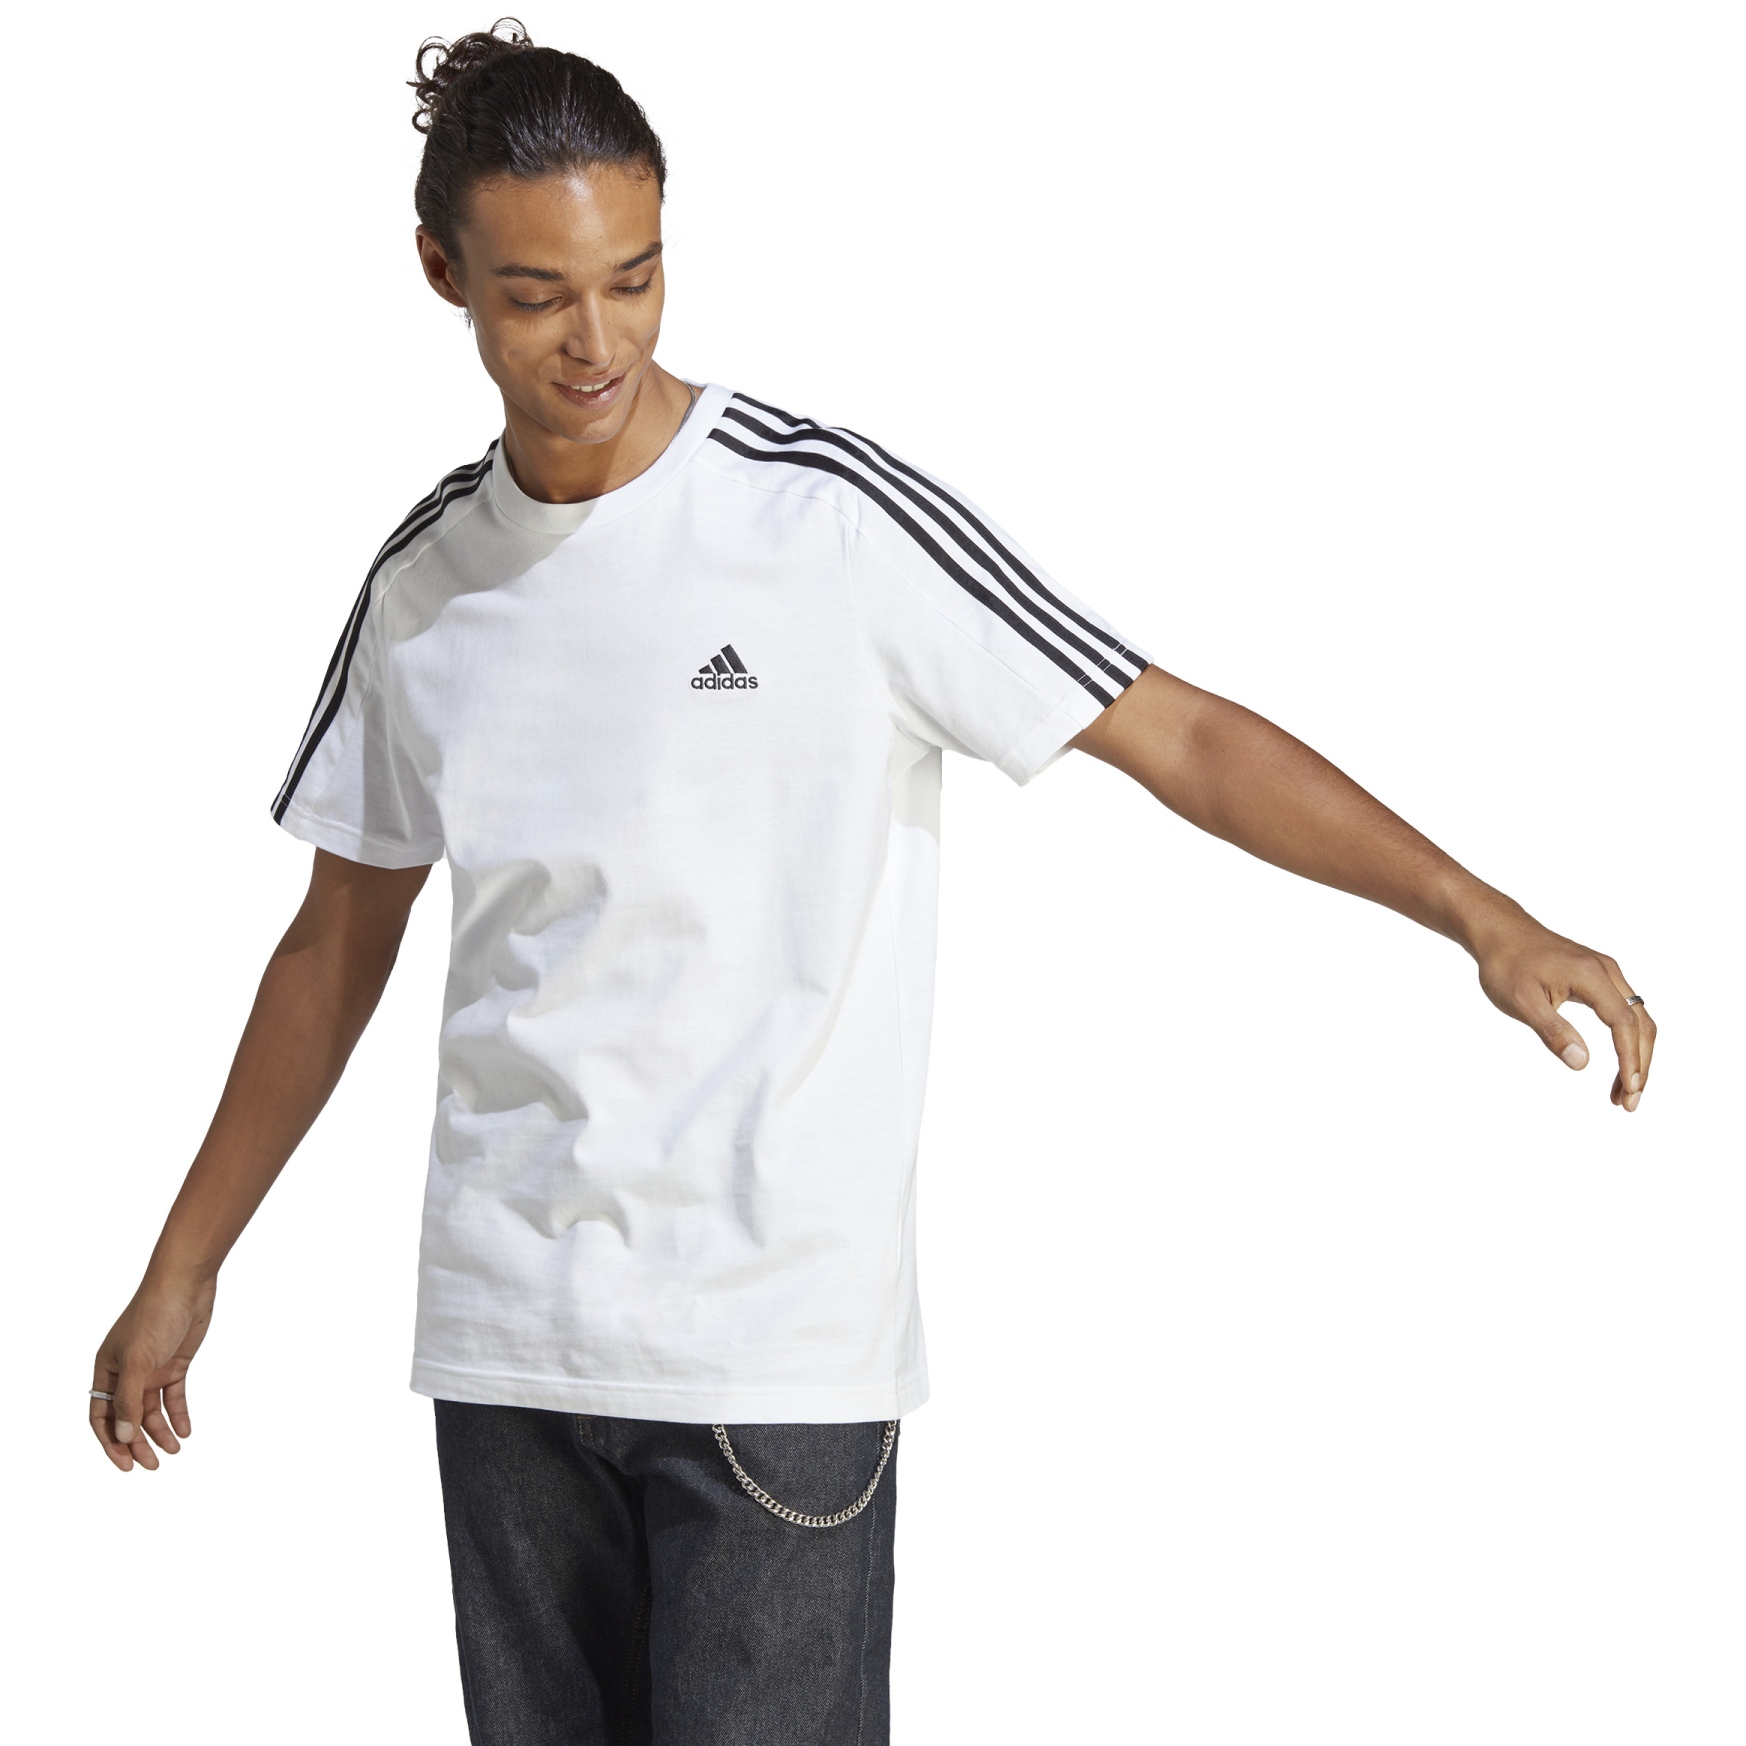 overvældende meget fint evne adidas Essentials Single Jersey 3-Stripes T-Shirt Men - white/black IC9336